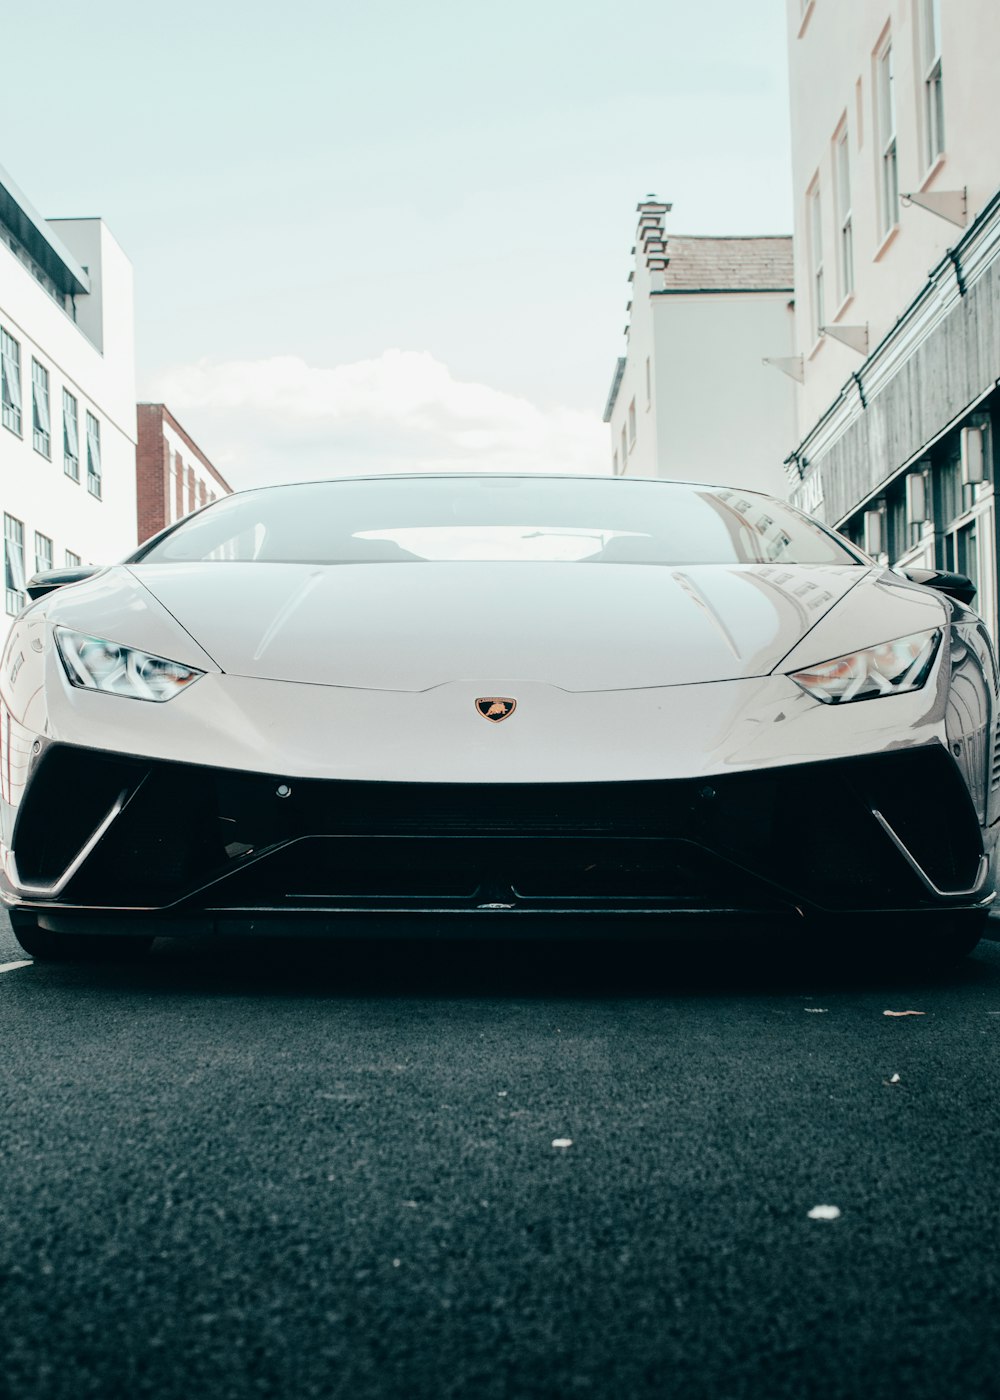 Lamborghini Aventador blanco aparcado en la carretera durante el día